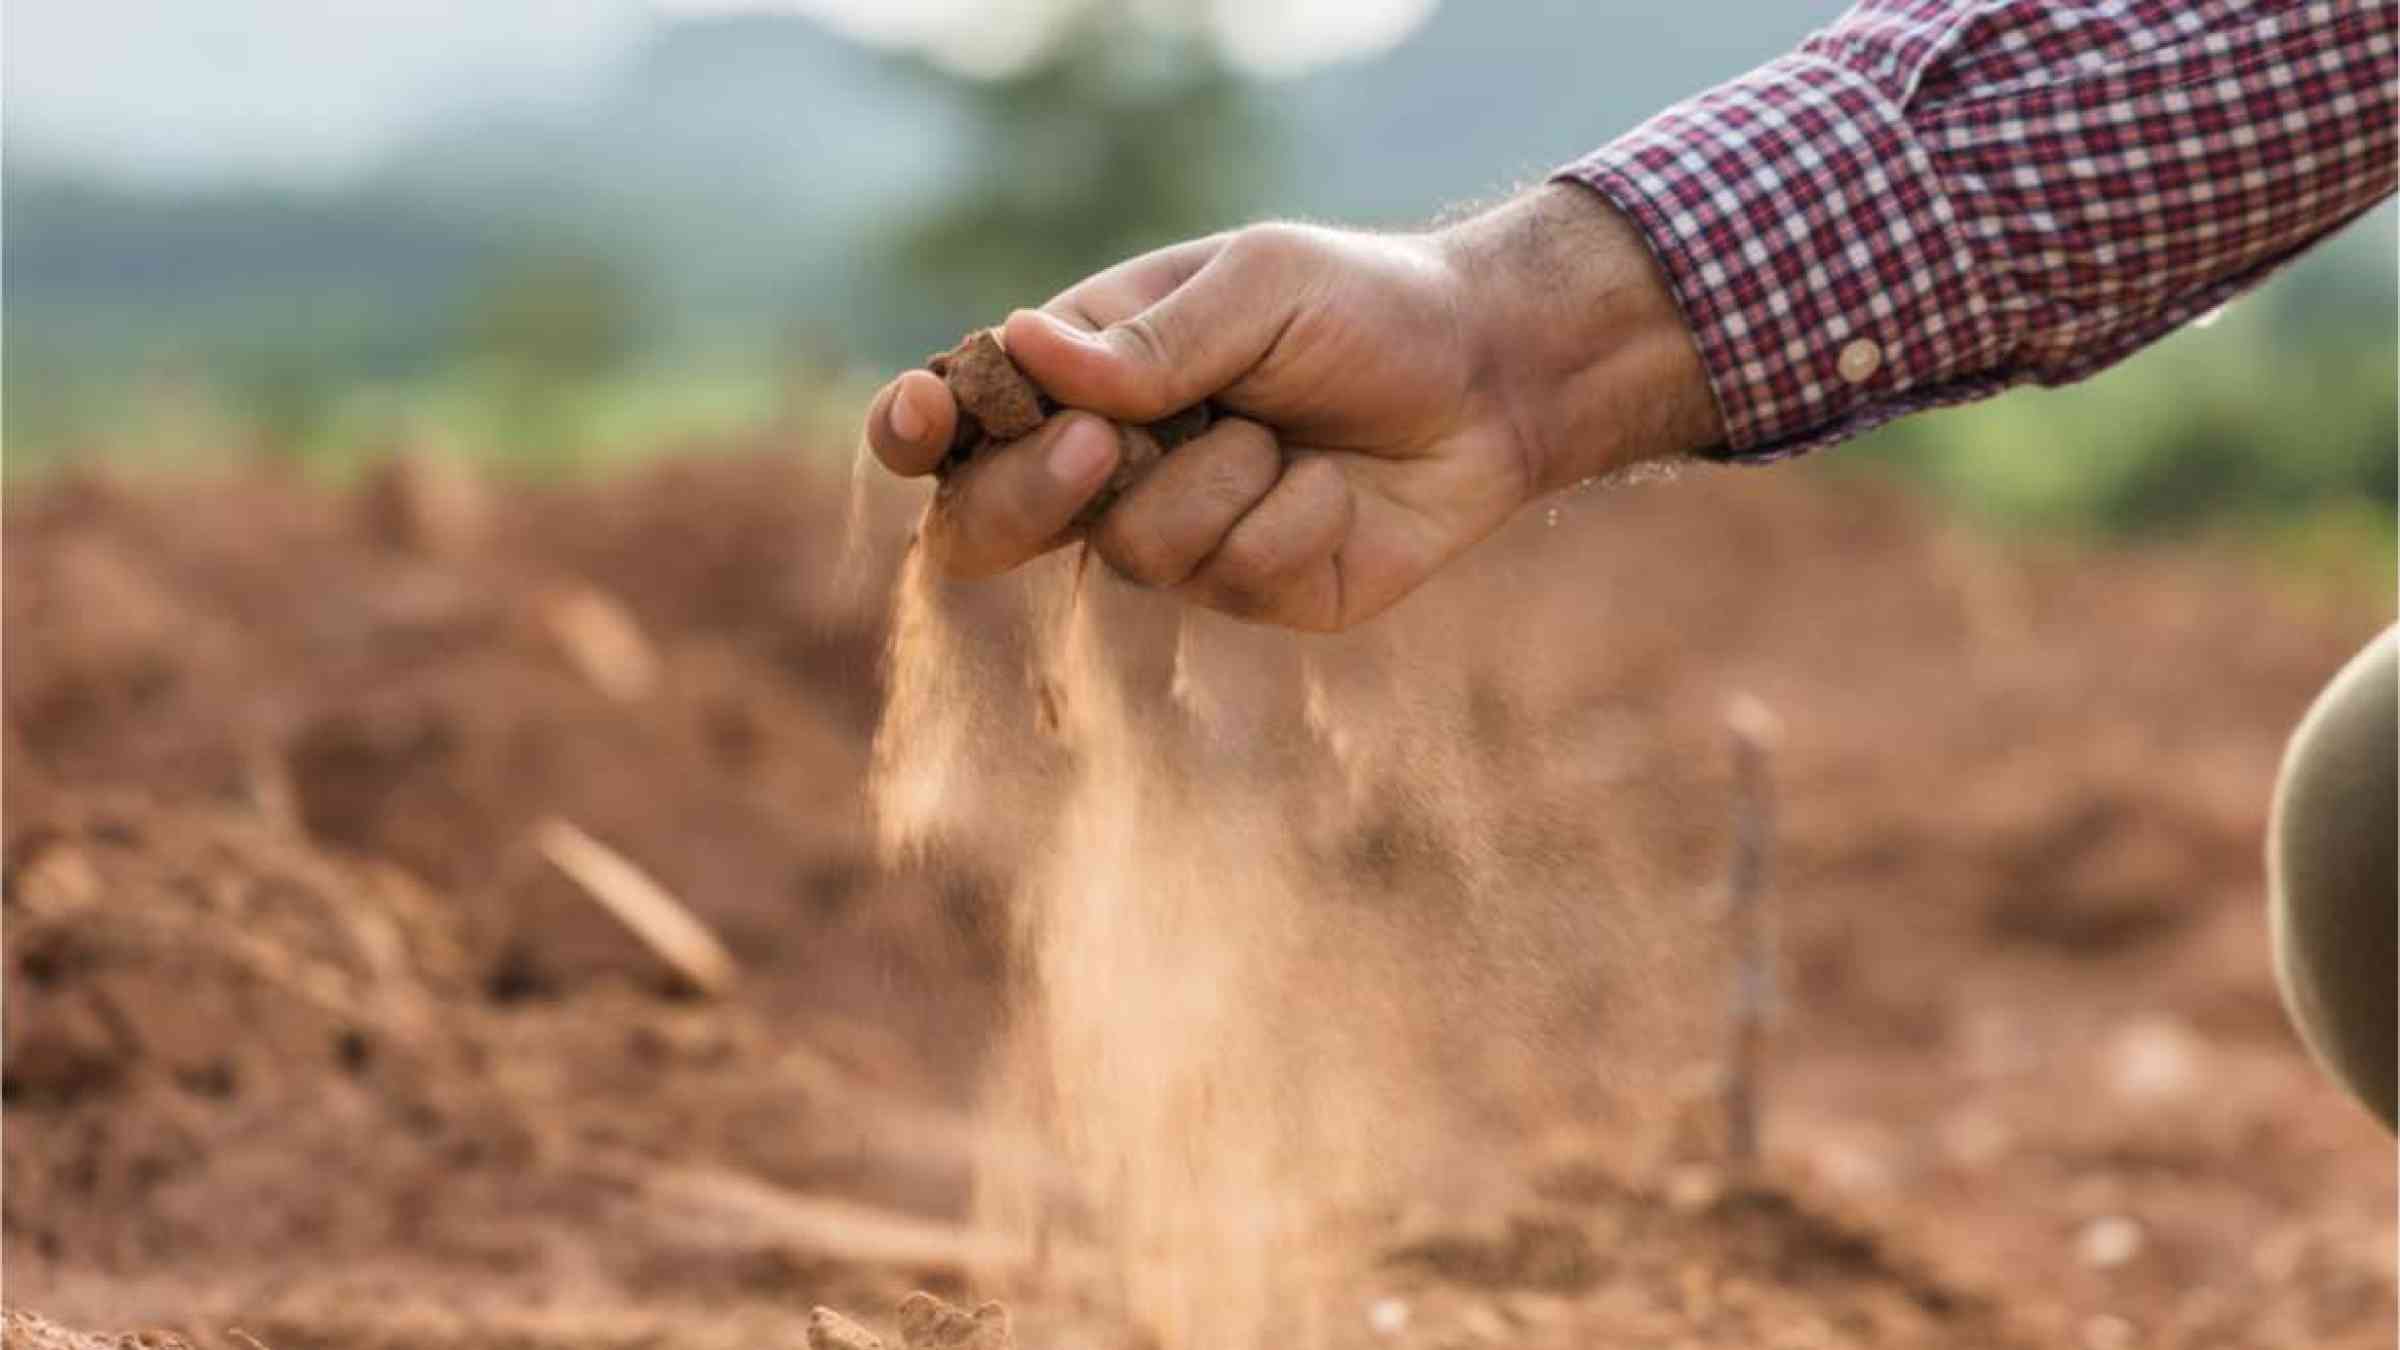 A farmer testing soil by hand